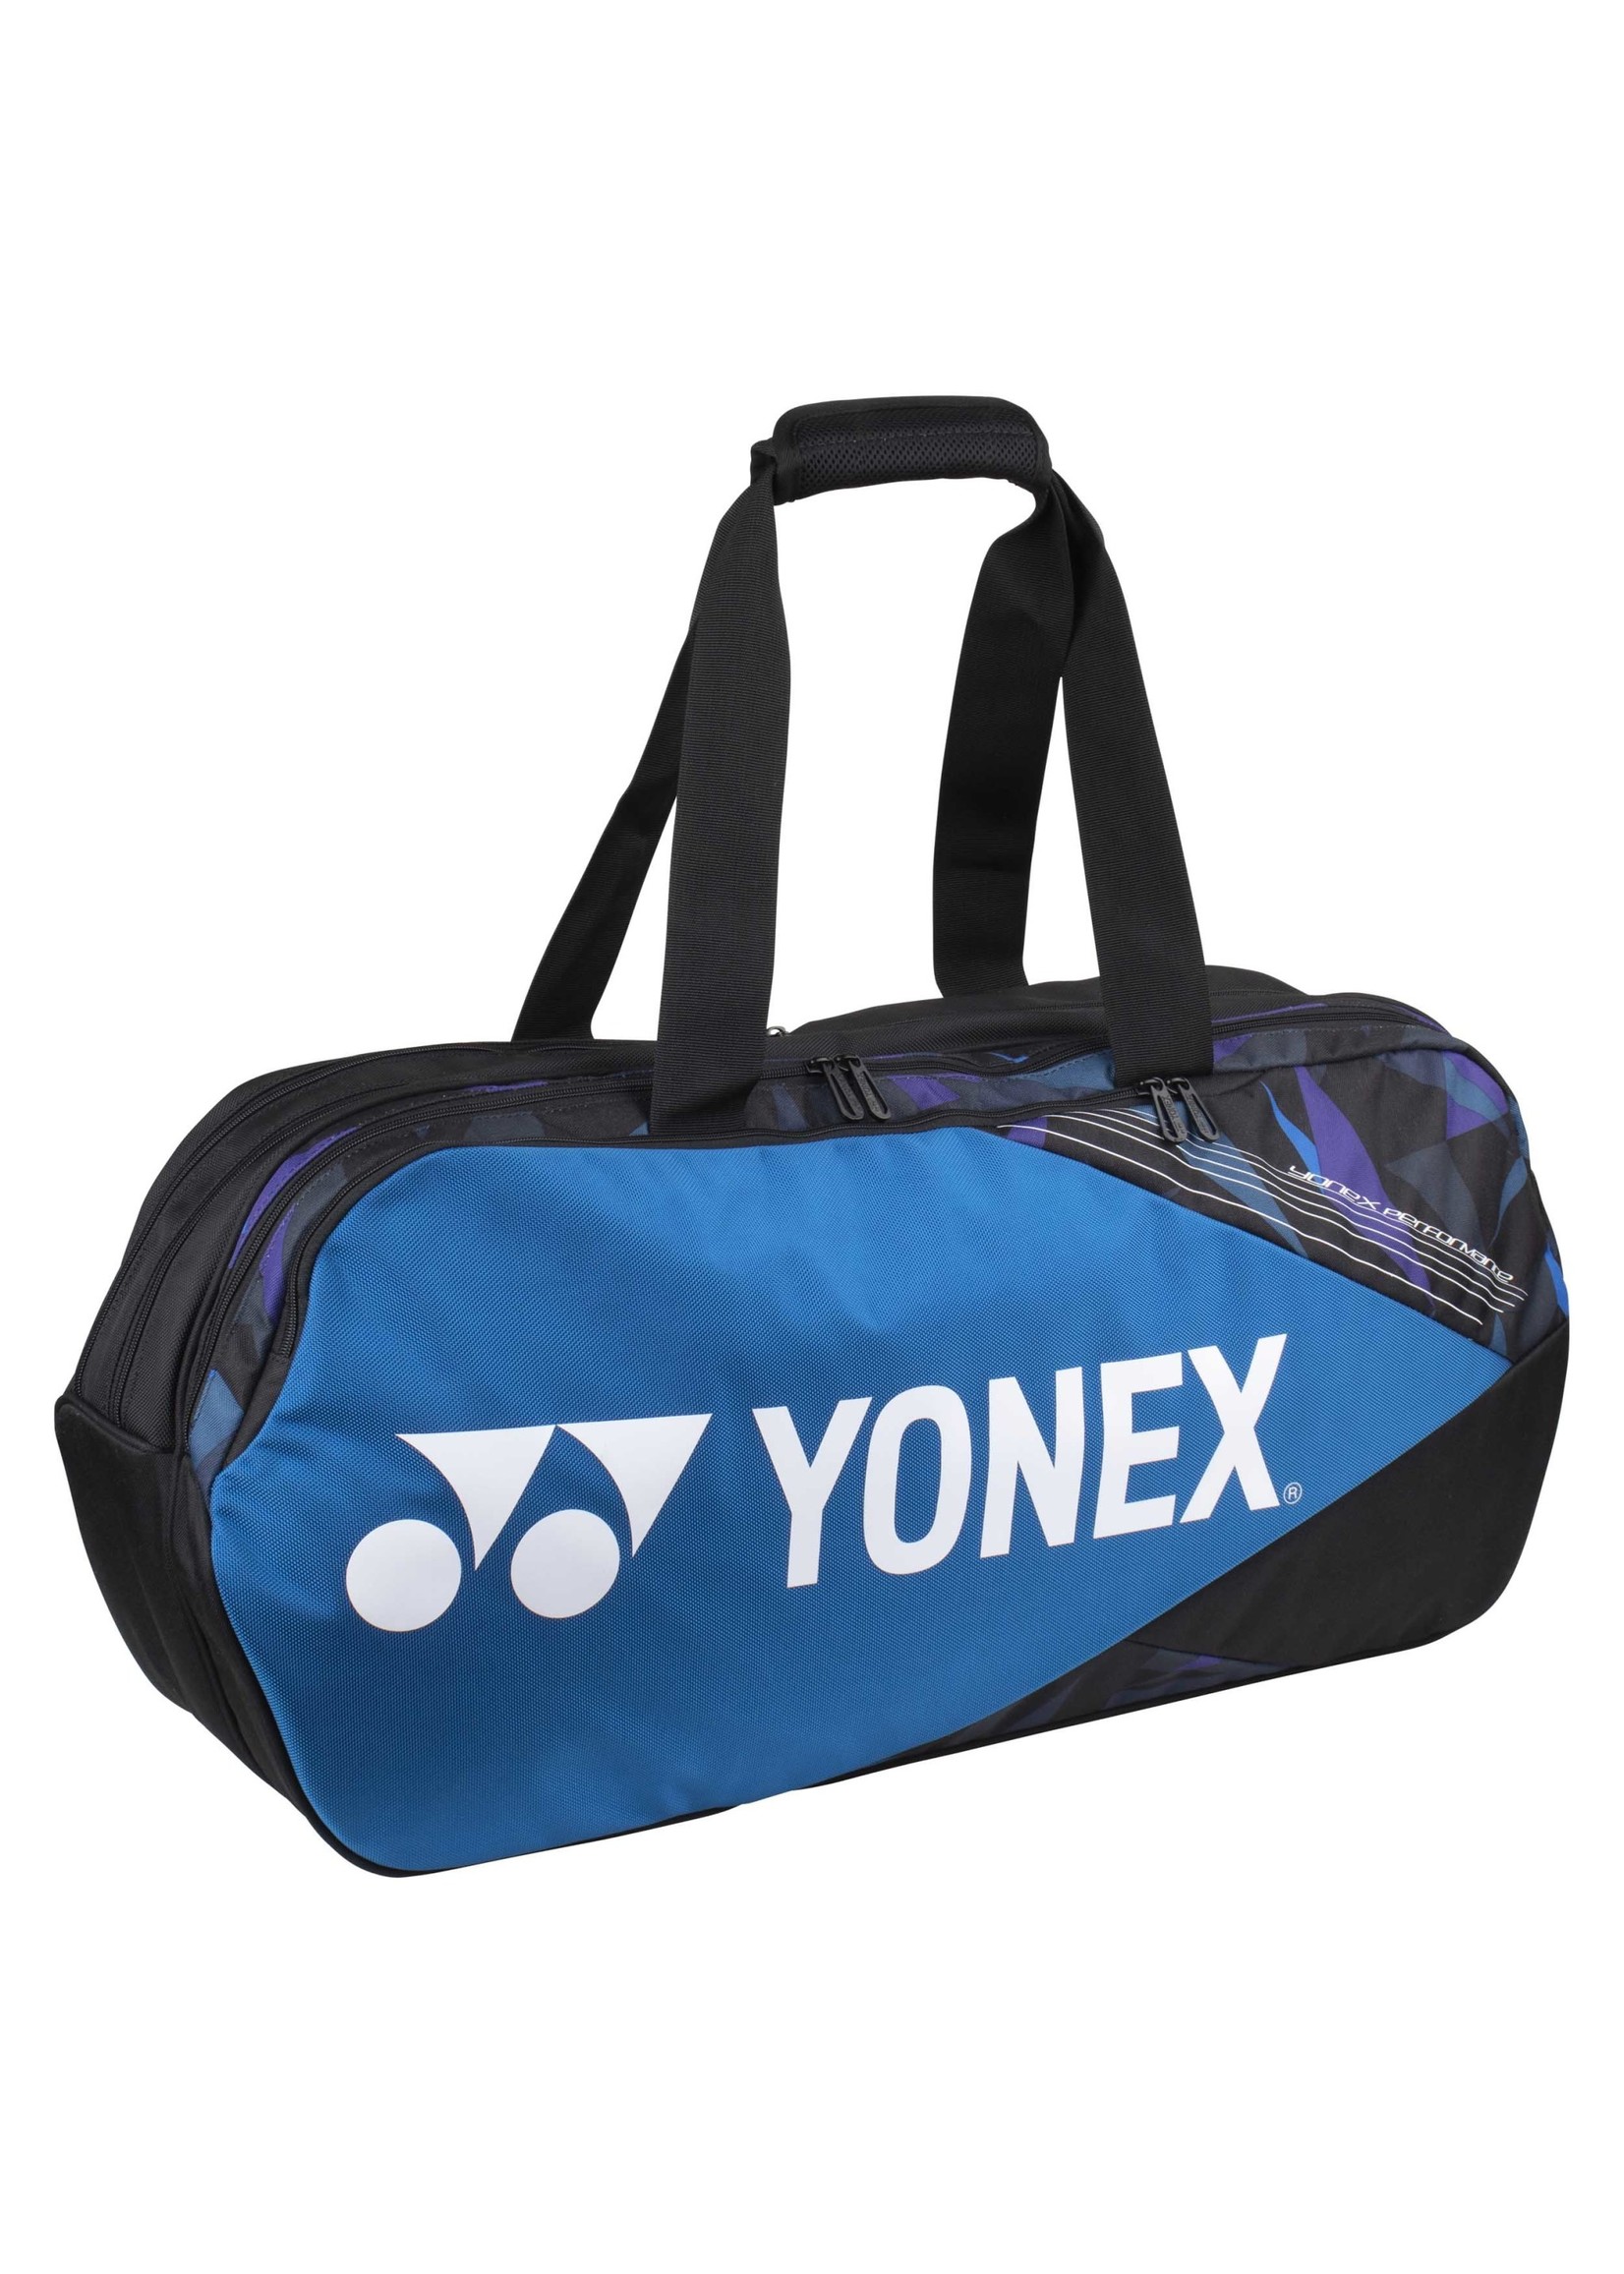 Yonex Yonex Pro tournament bag  92231WEX